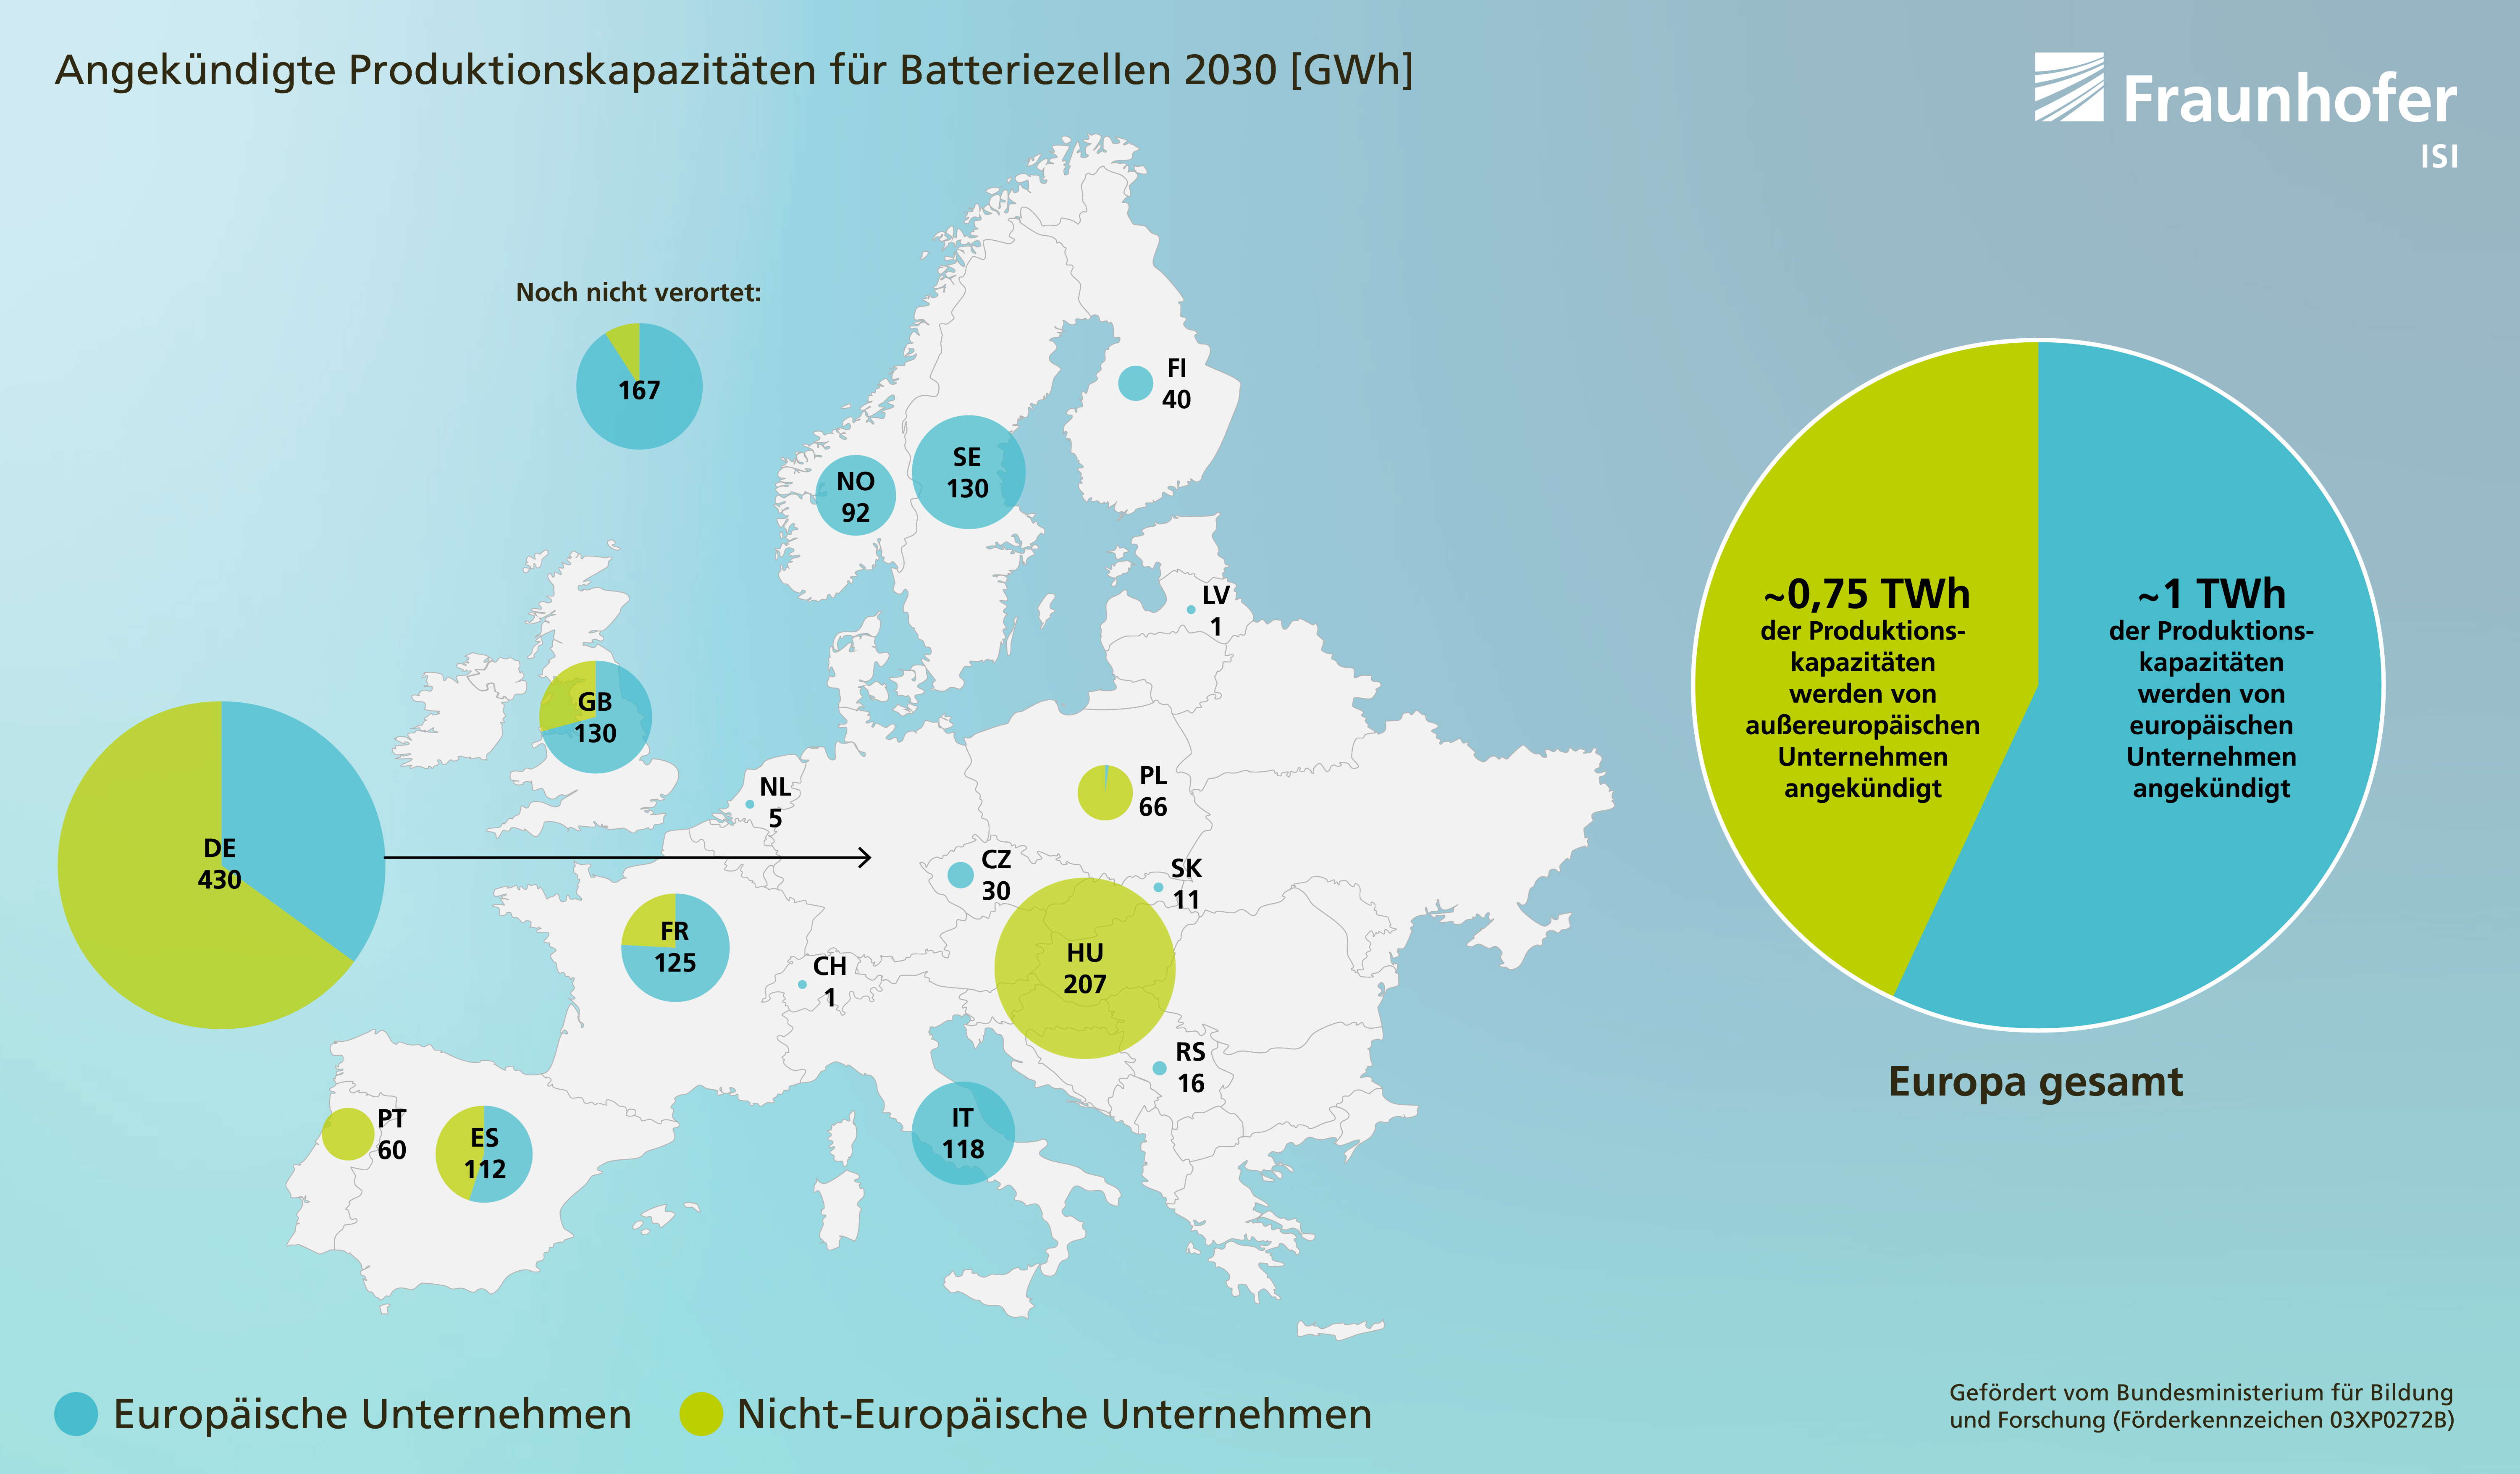 Angekündigte Produktionskapazitäten für Batteriezellen in Europa 2030